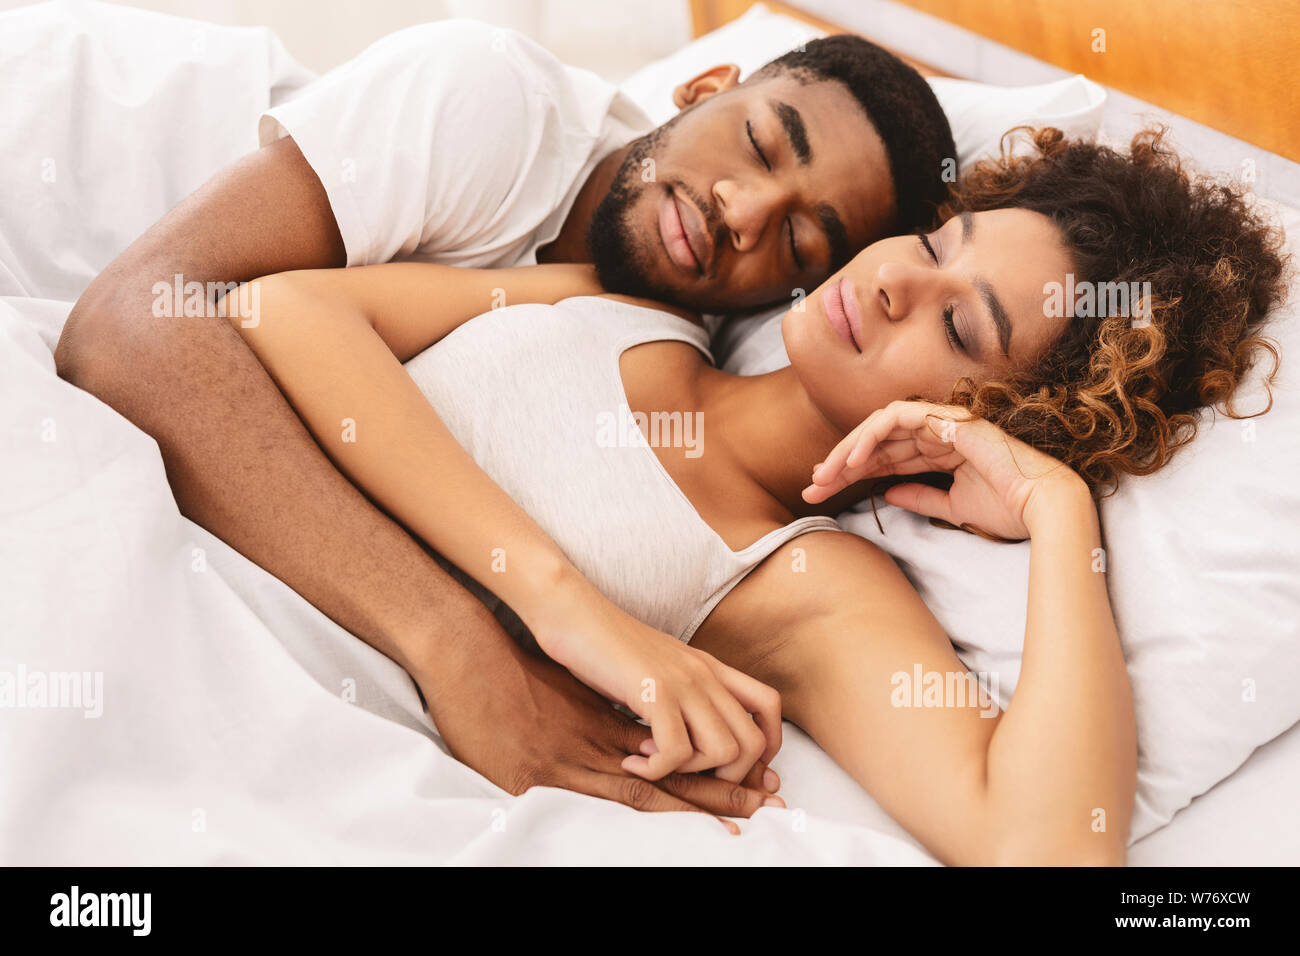 Liebespaar im Bett schlafen und umarmen Stockfotografie - Alamy